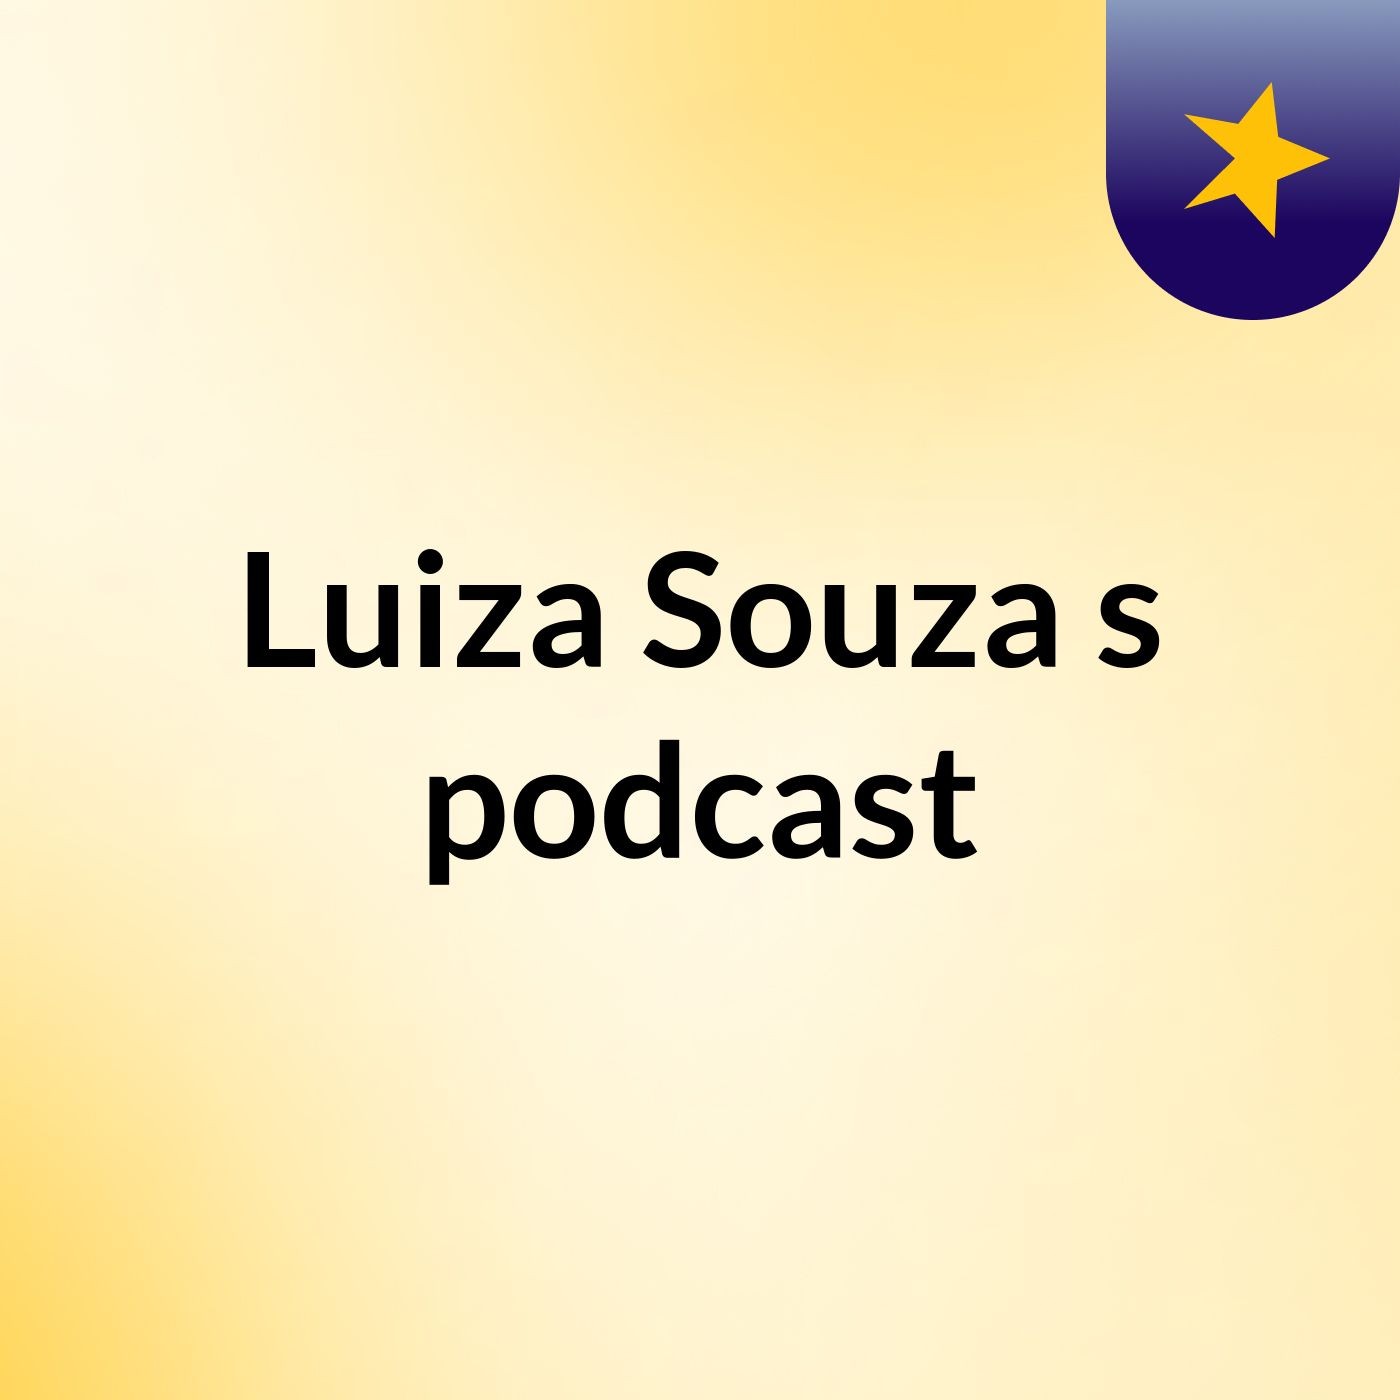 Luiza Souza's podcast